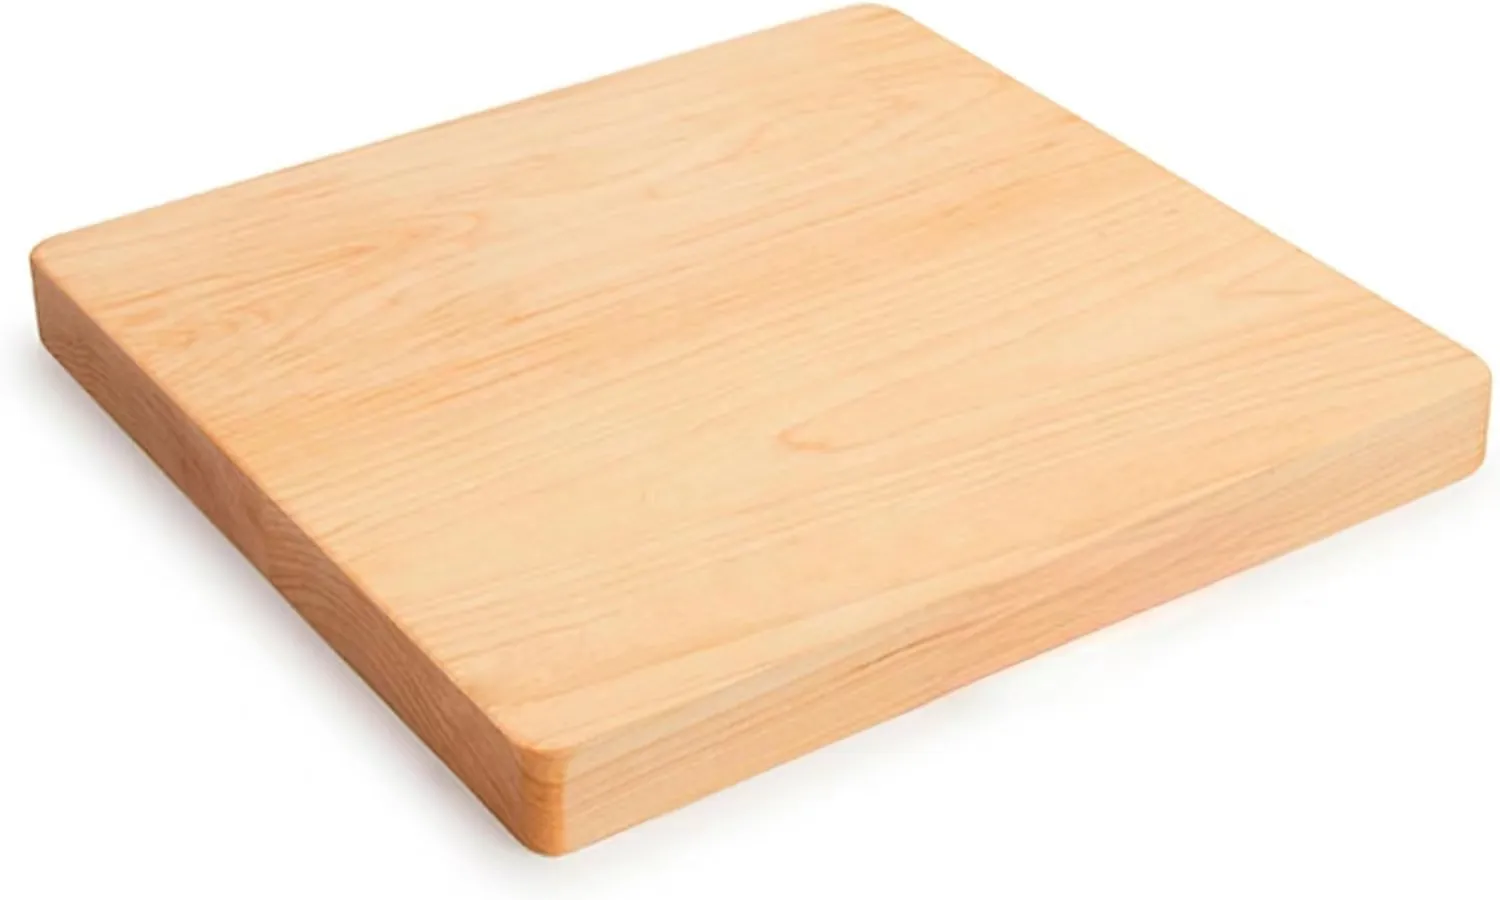 Thớt phong, thích hợp cho việc chuẩn bị nhà bếp, dày 2.54 cm, nhỏ, cạnh kết cấu, Thớt gỗ vuông